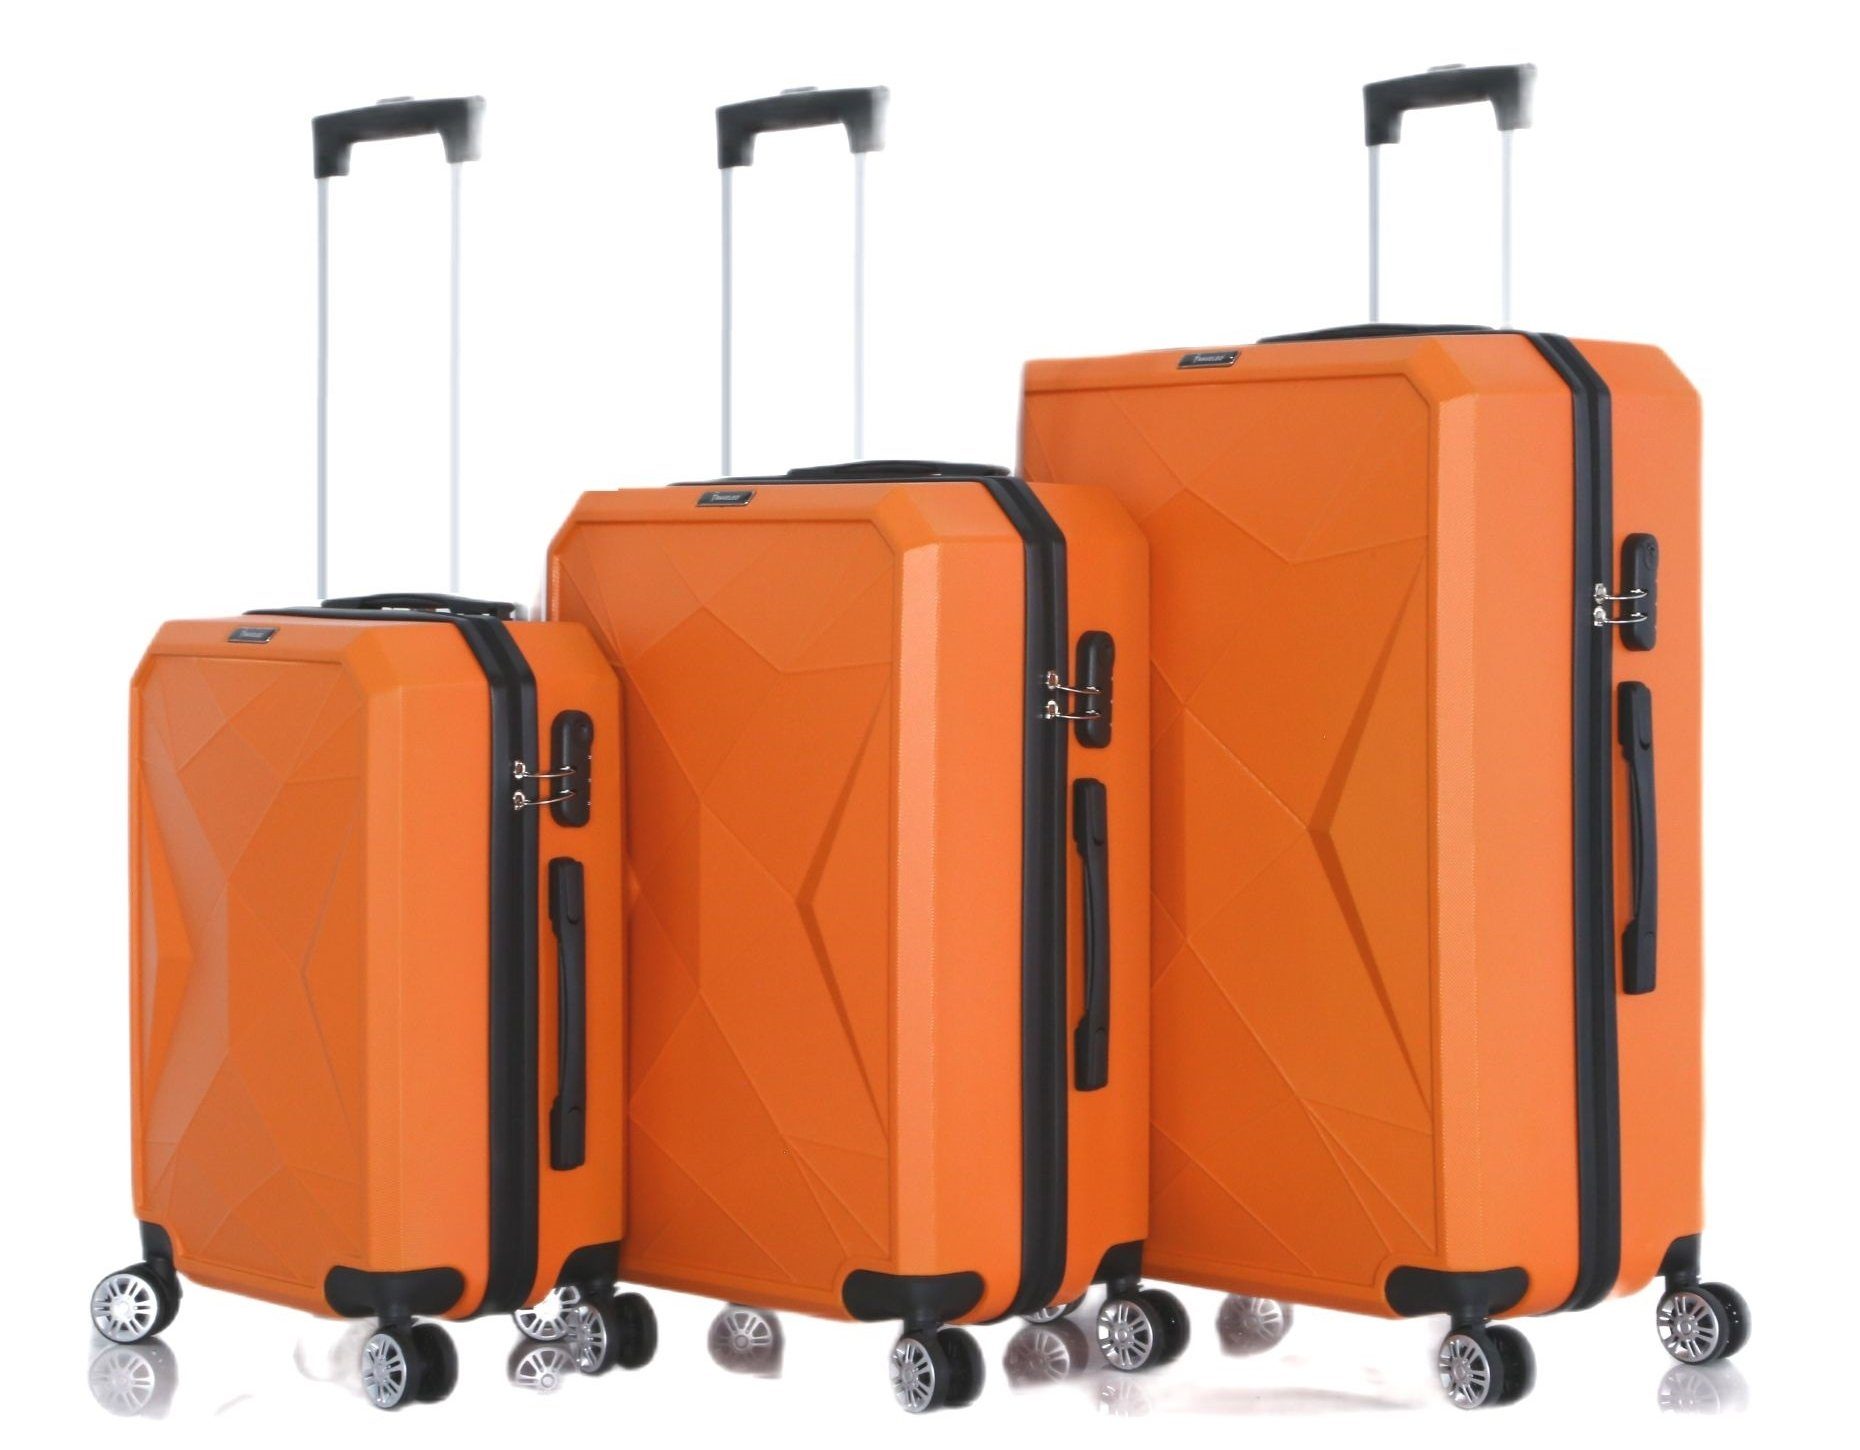 Rungassi Kofferset Rungassi Hartschalenkoffer Trolley Reisekoffer Koffer Set ABS03 orange